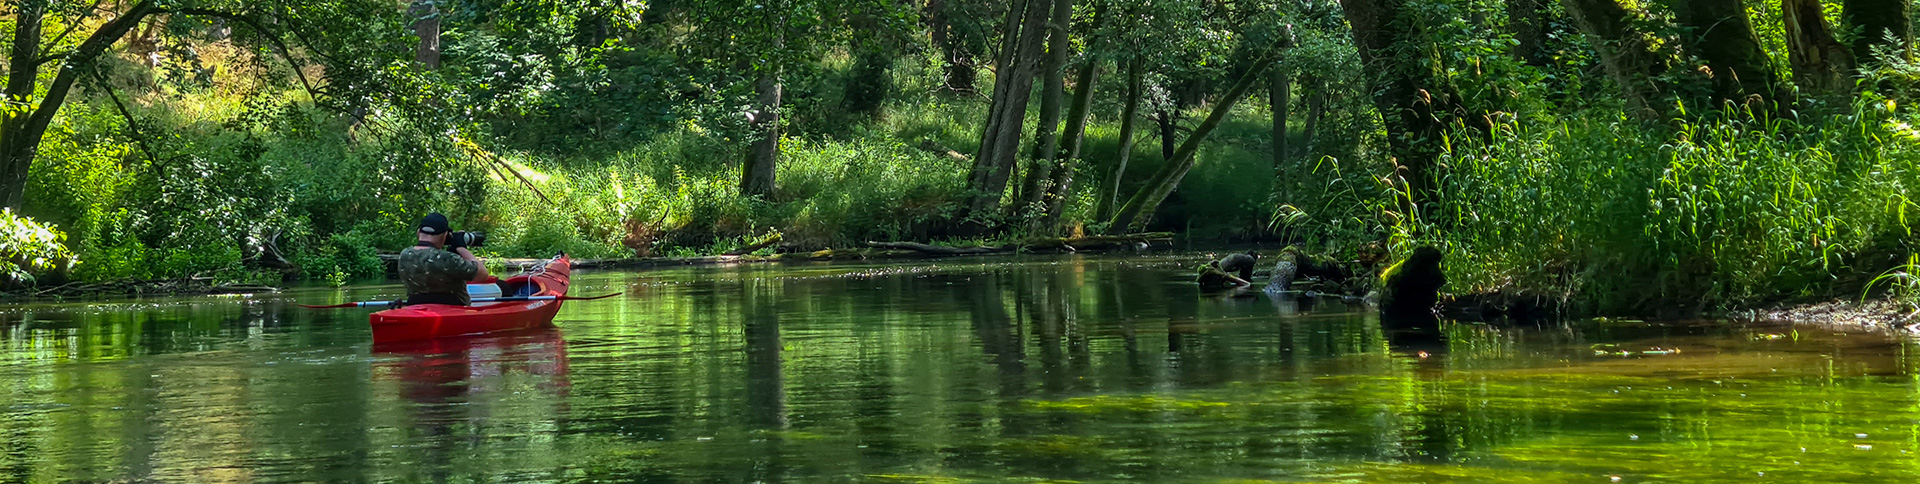 Rzeka Brda - spływ kajakowy